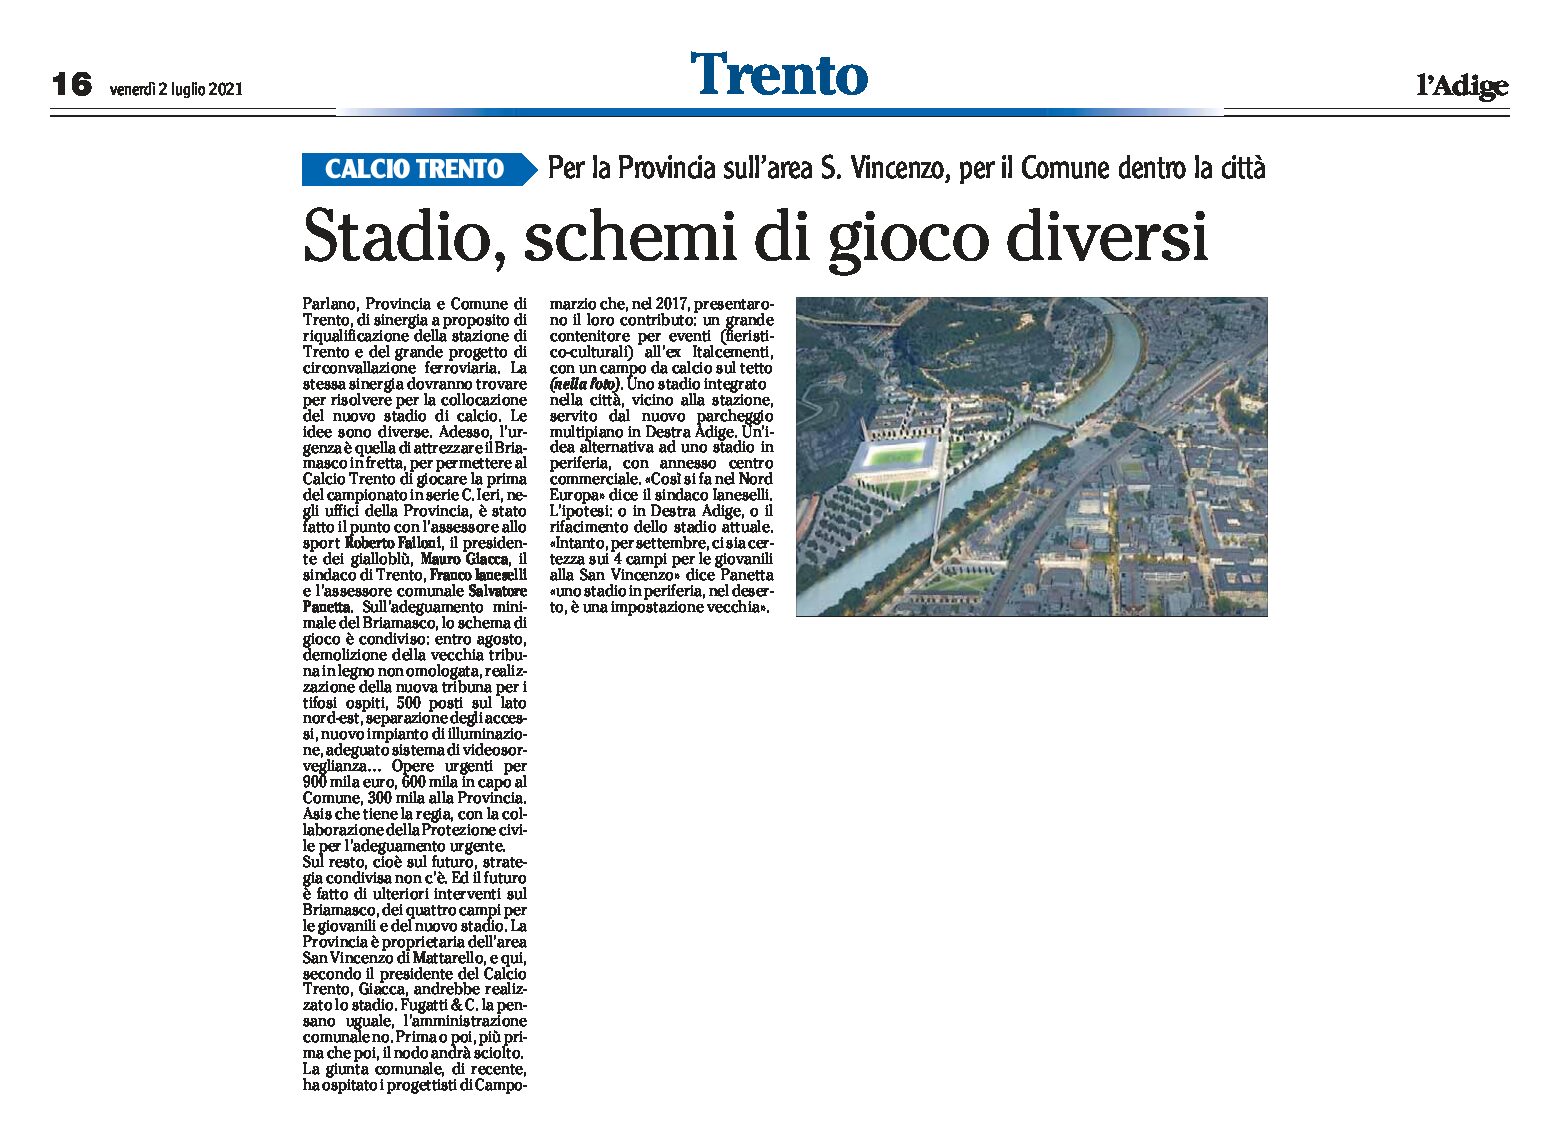 Calcio Trento: stadio, schemi di gioco diversi. Per la Provincia sull’area S.Vincenzo, per il Comune dentro la città